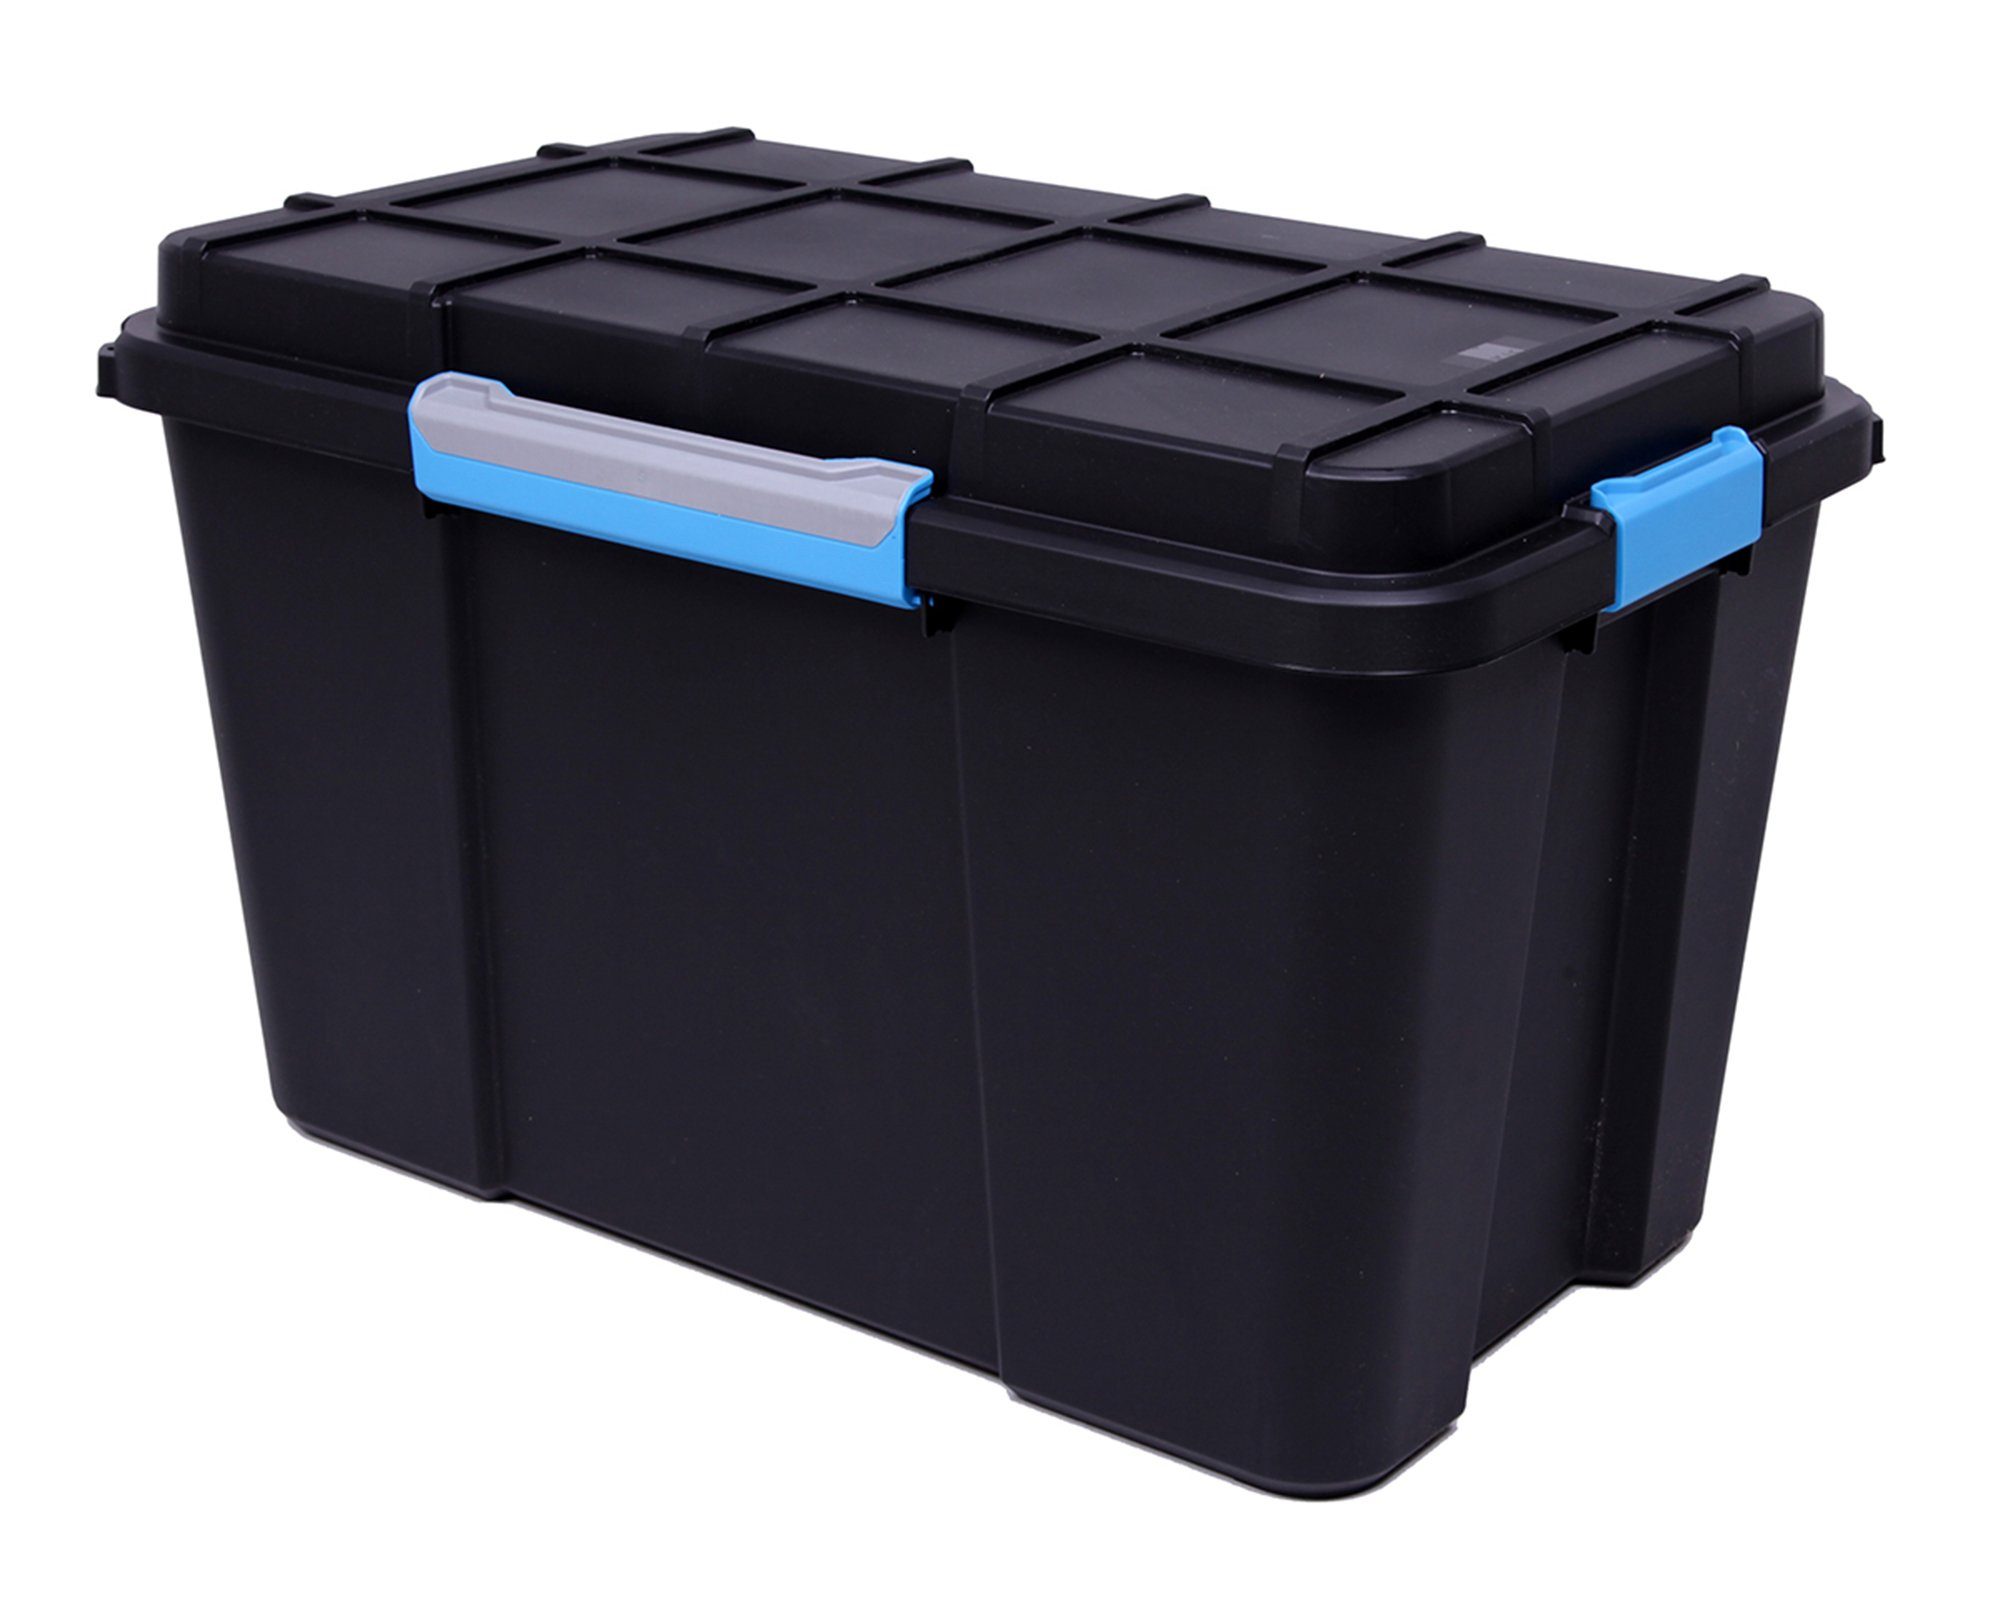 ONDIS24 Aufbewahrungsbox Multifunktionsbox Scuba Transportkiste Outdoor Kiste Box abschließbar, rollbar, spritzwassergeschützt